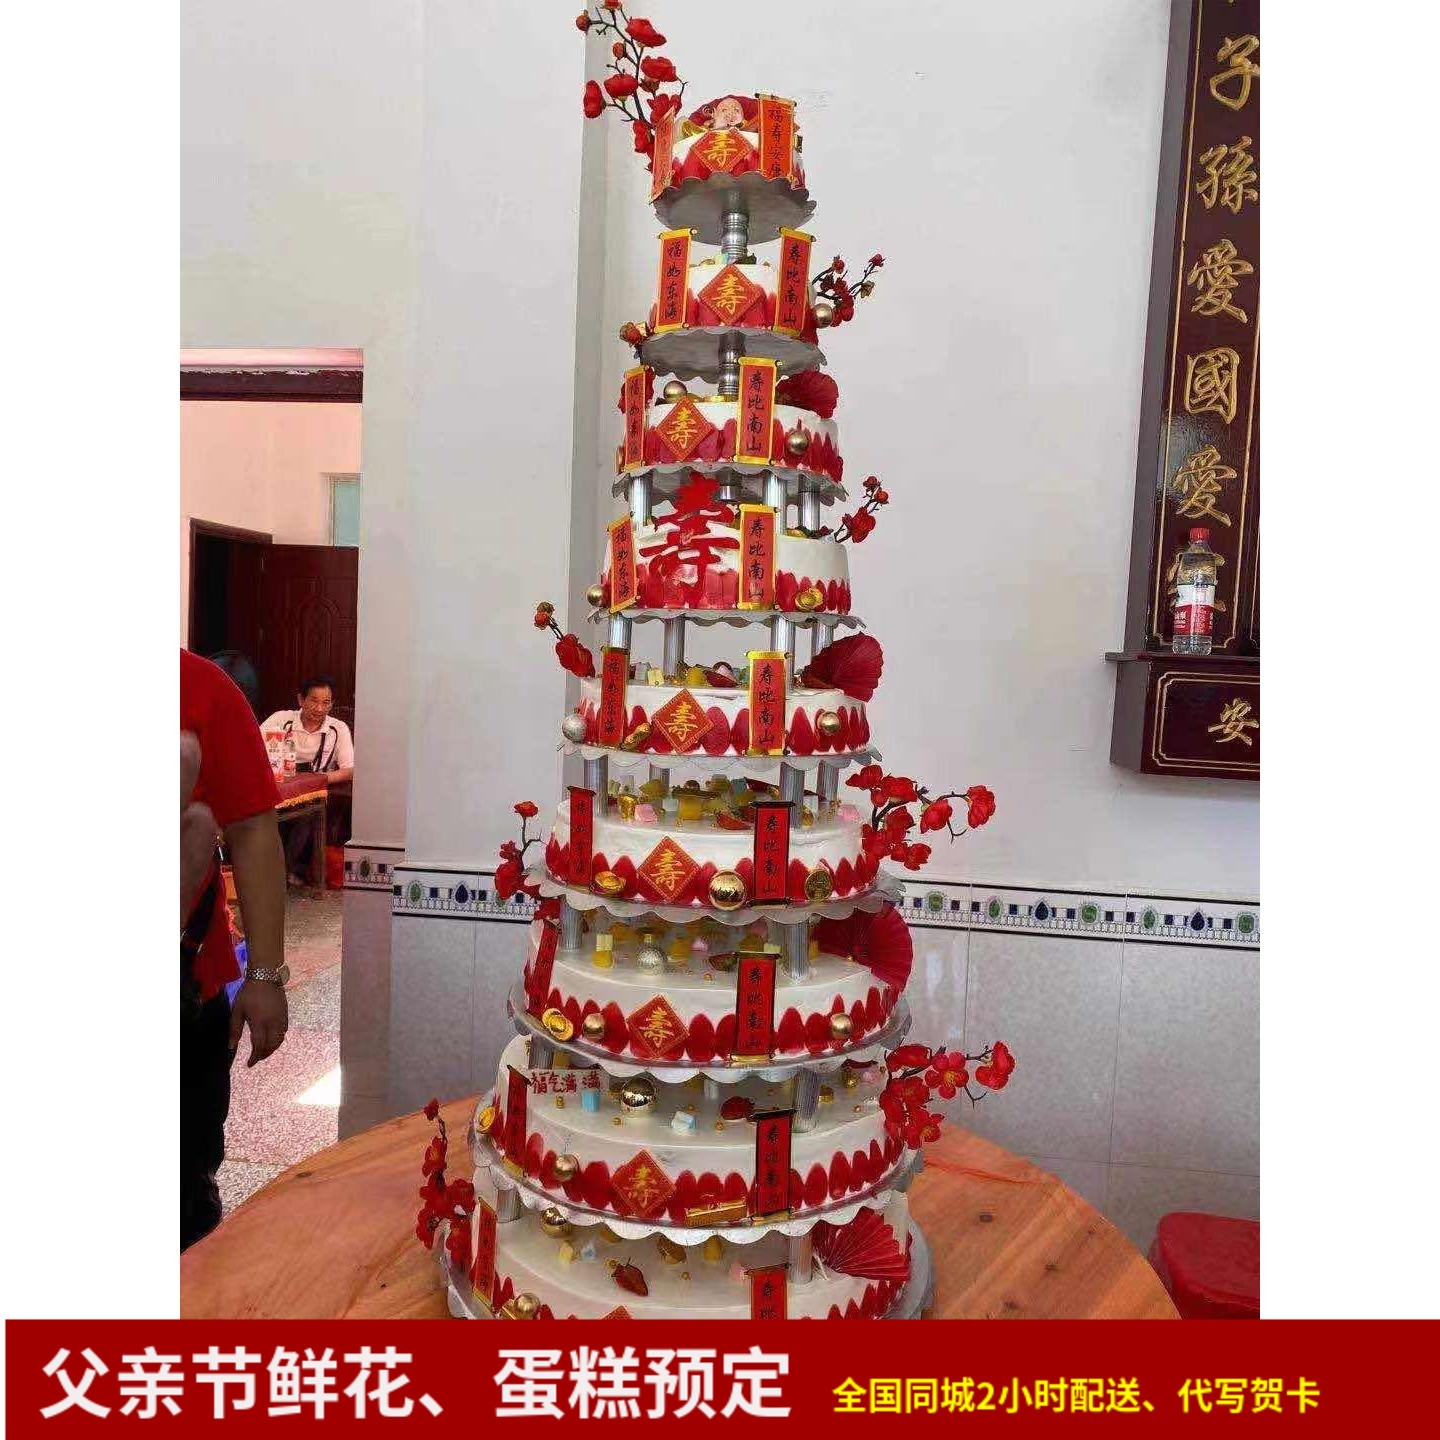 多层祝寿婚礼支架生日蛋糕全国同城速递配送爷奶祝福武汉长沙北京